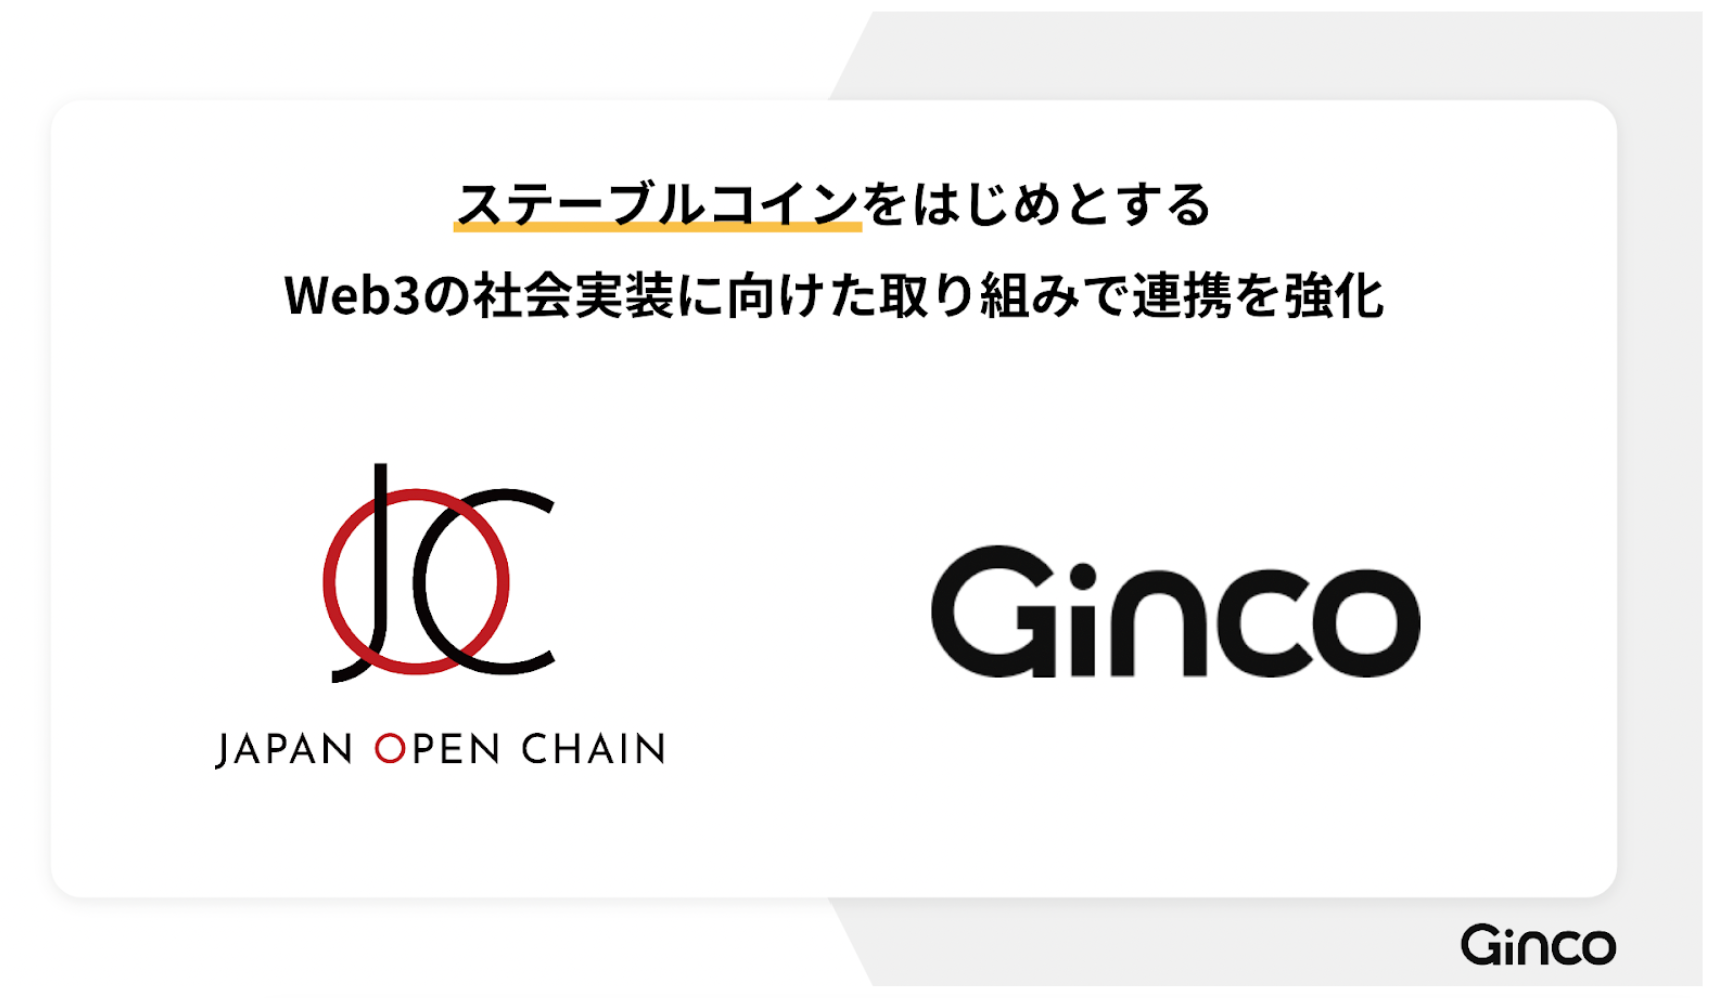 2023.12.7【プレスリリース】Ginco、Japan Open Chainのディベロップメント・パートナーに。ステーブルコインをはじめとするWeb3の社会実装に向けた取り組みで連携を強化